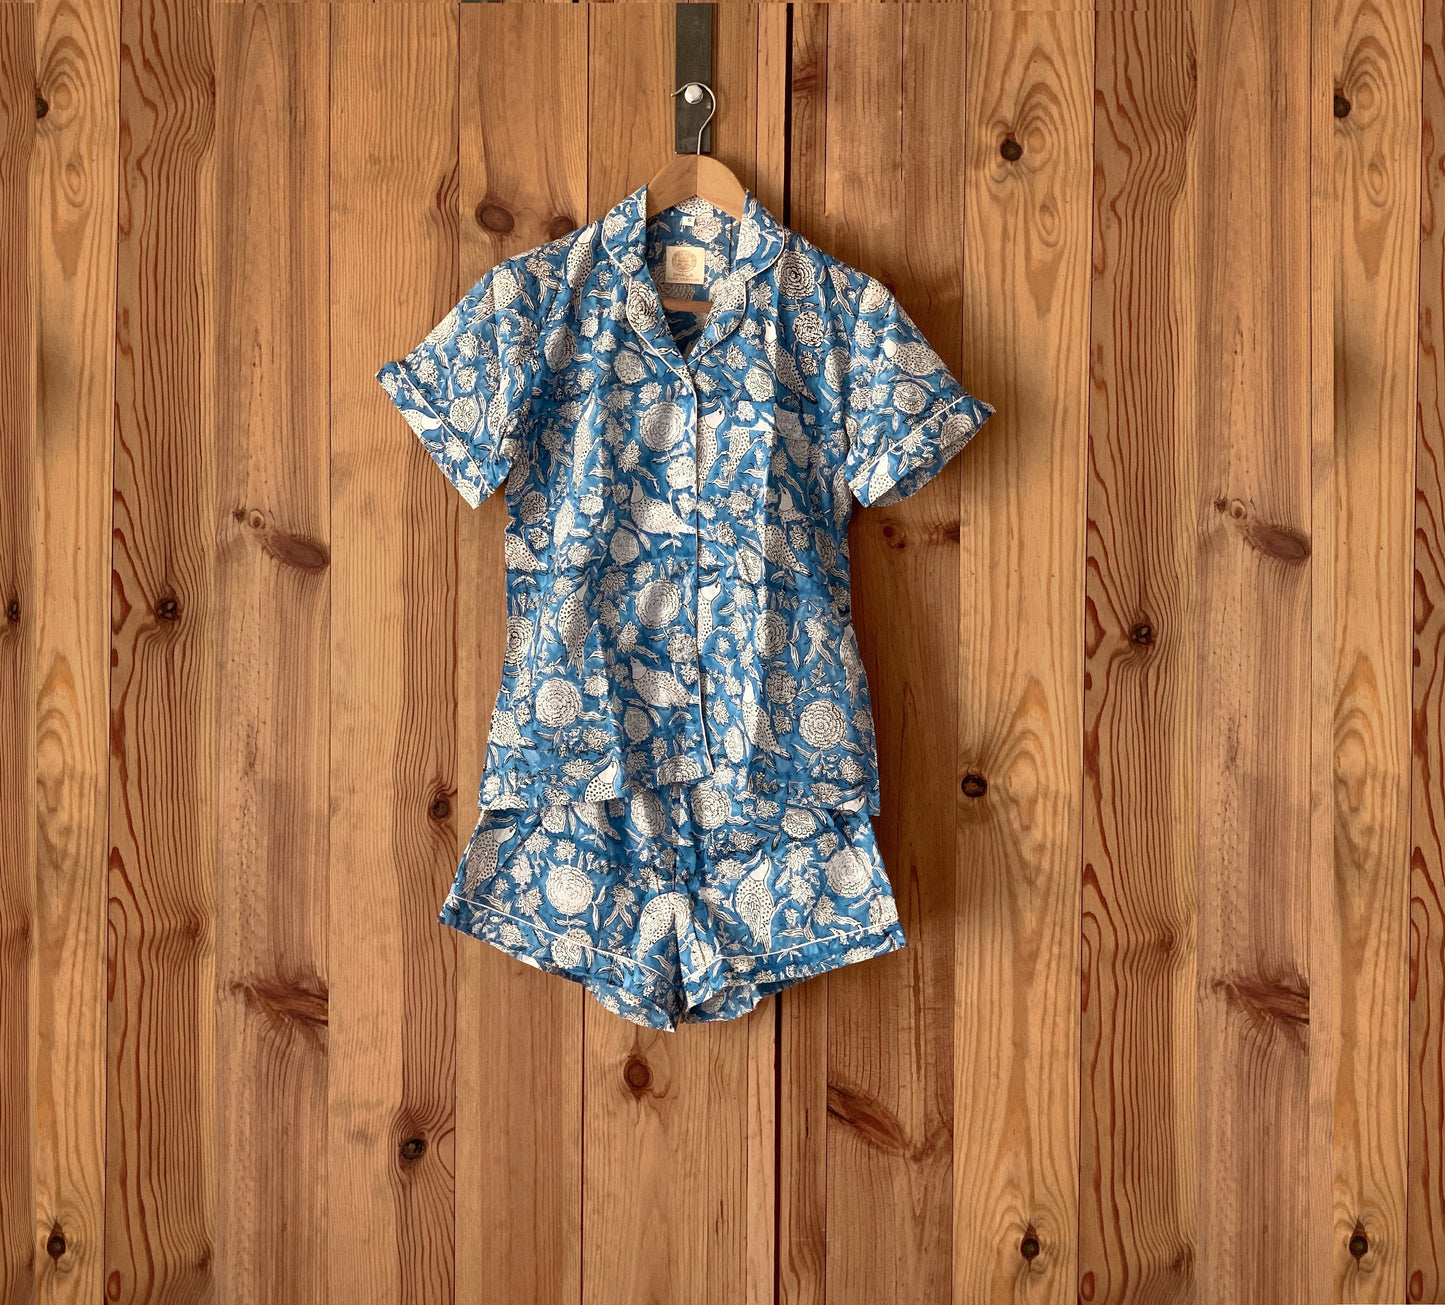 Pijama manga y pantalón corto · Algodón puro estampado block print artesanal en India · Pijama verano algodón 100% · Azul flores blanco